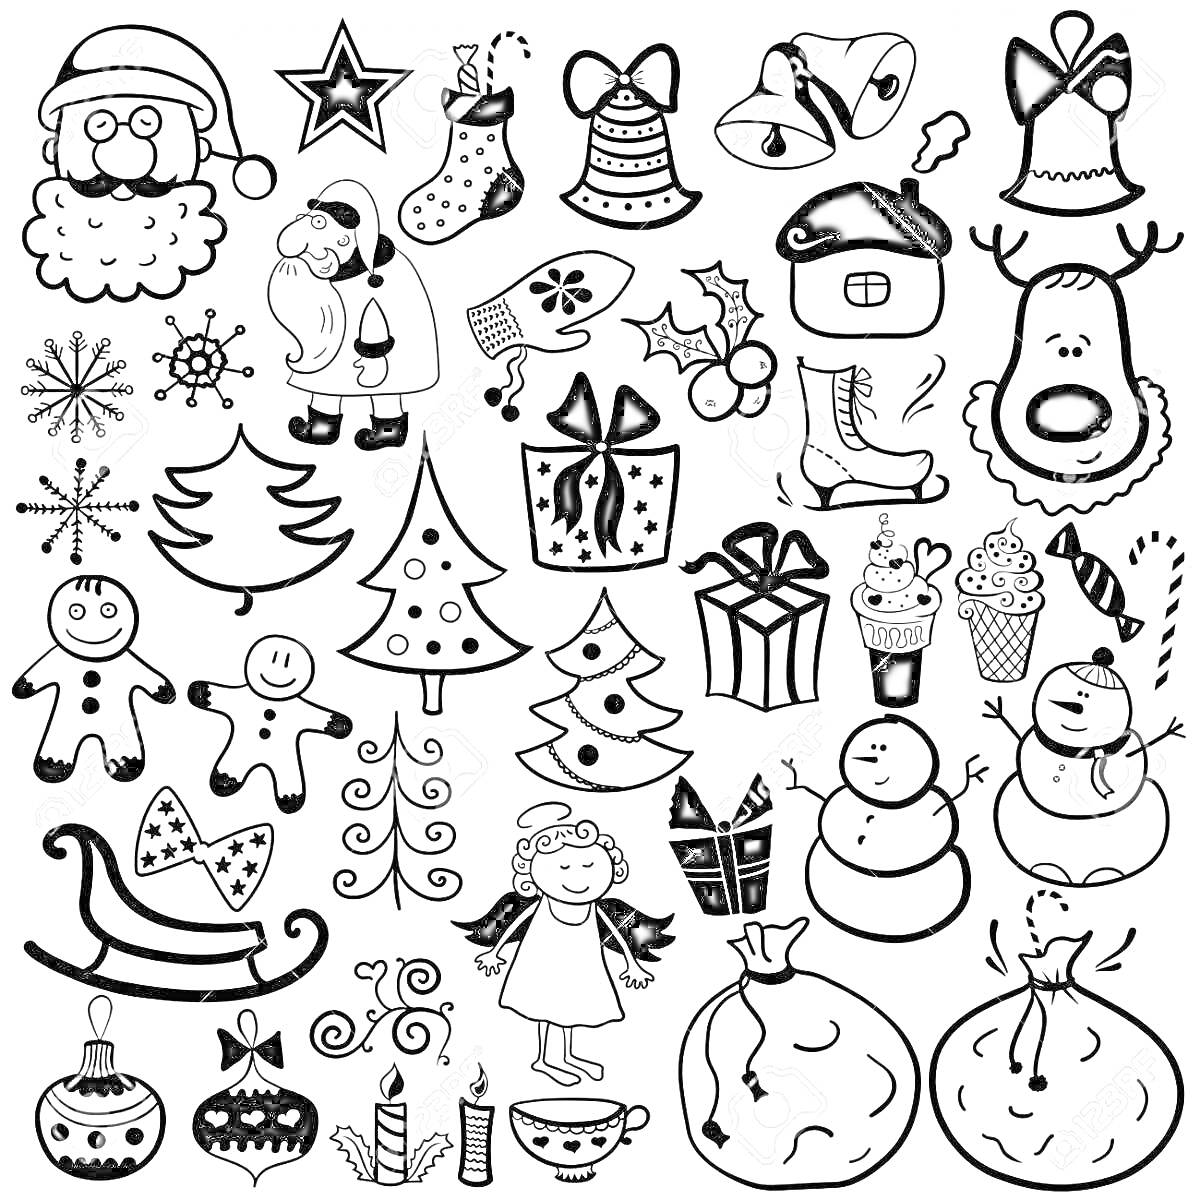 Раскраска Новогодние наклейки с различными элементами для раскраски: Санта Клаус, звезда, колокольчики, кепка, олень, три снежинки, митенка, веточка остролиста с ягодами, домик, носок, веточка, пряничные человечки, елки, подарки, снеговики, кексики, санки, ангелоче